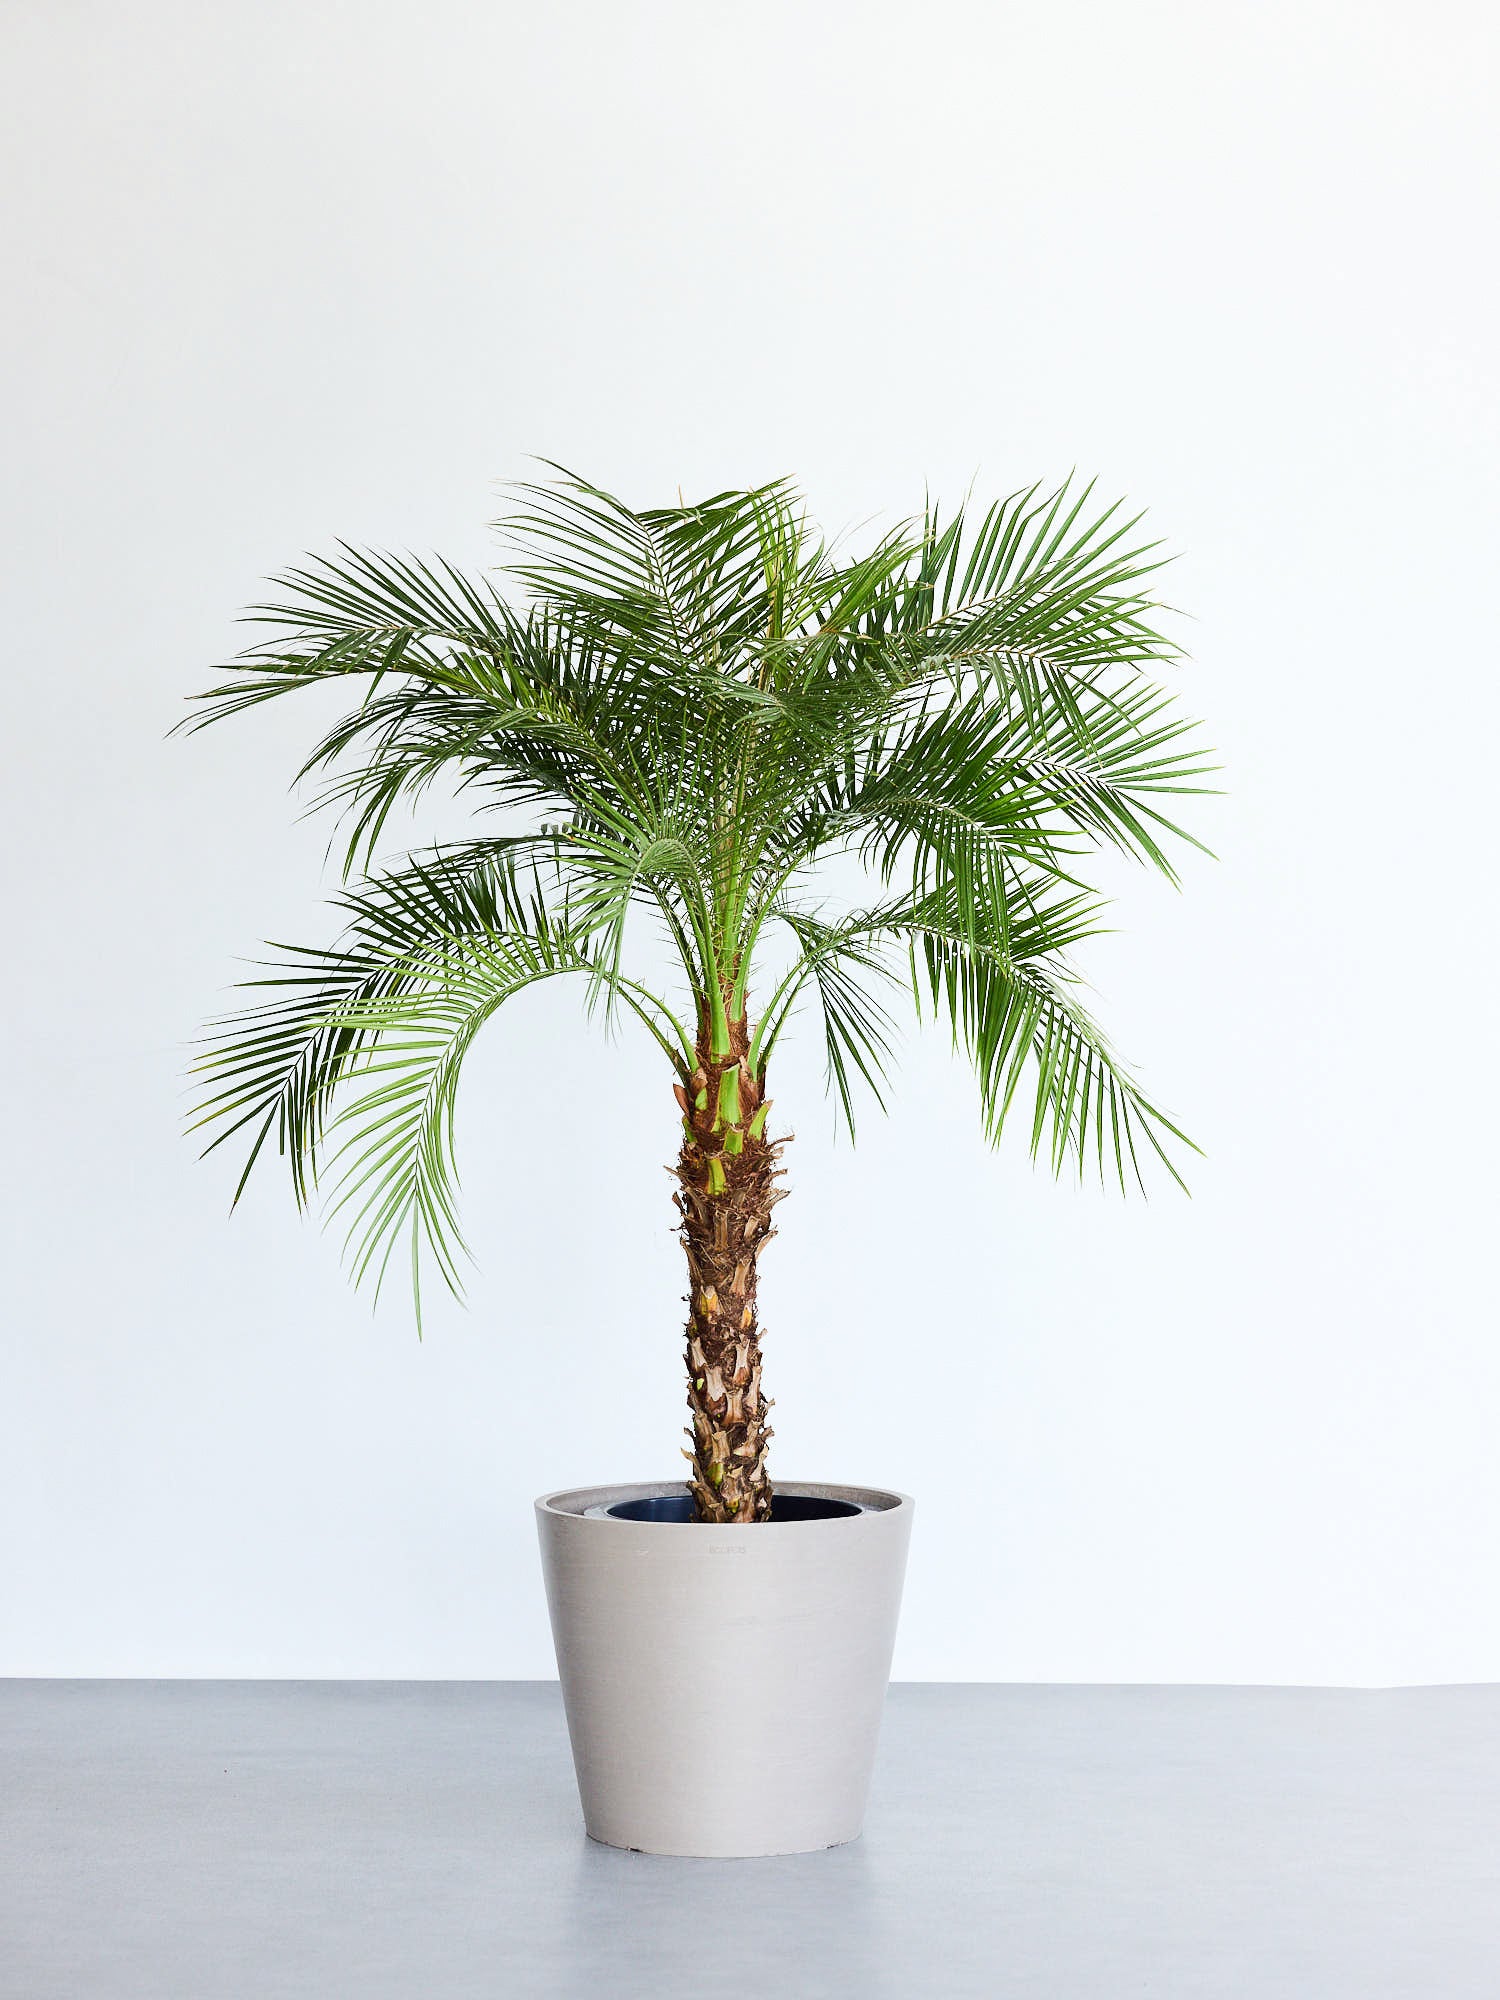 フェニックス ロベレニー A 超大型‼️ 250センチ 観葉植物 